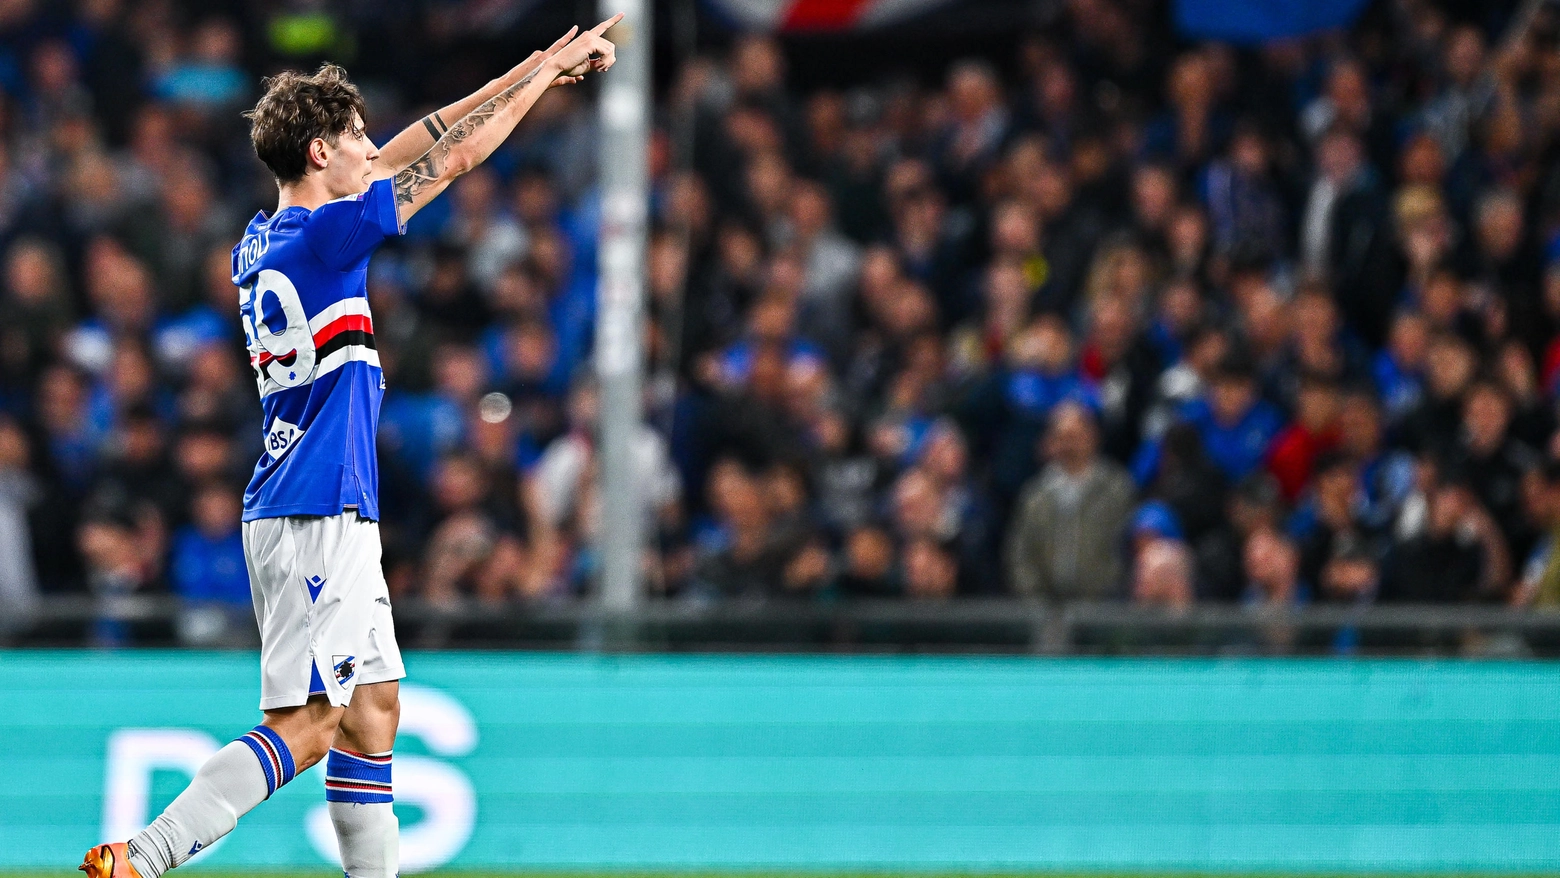 Gli azzurri di Zanetti festeggiano la salvezza in Serie A, grazie ad un gol al 93'